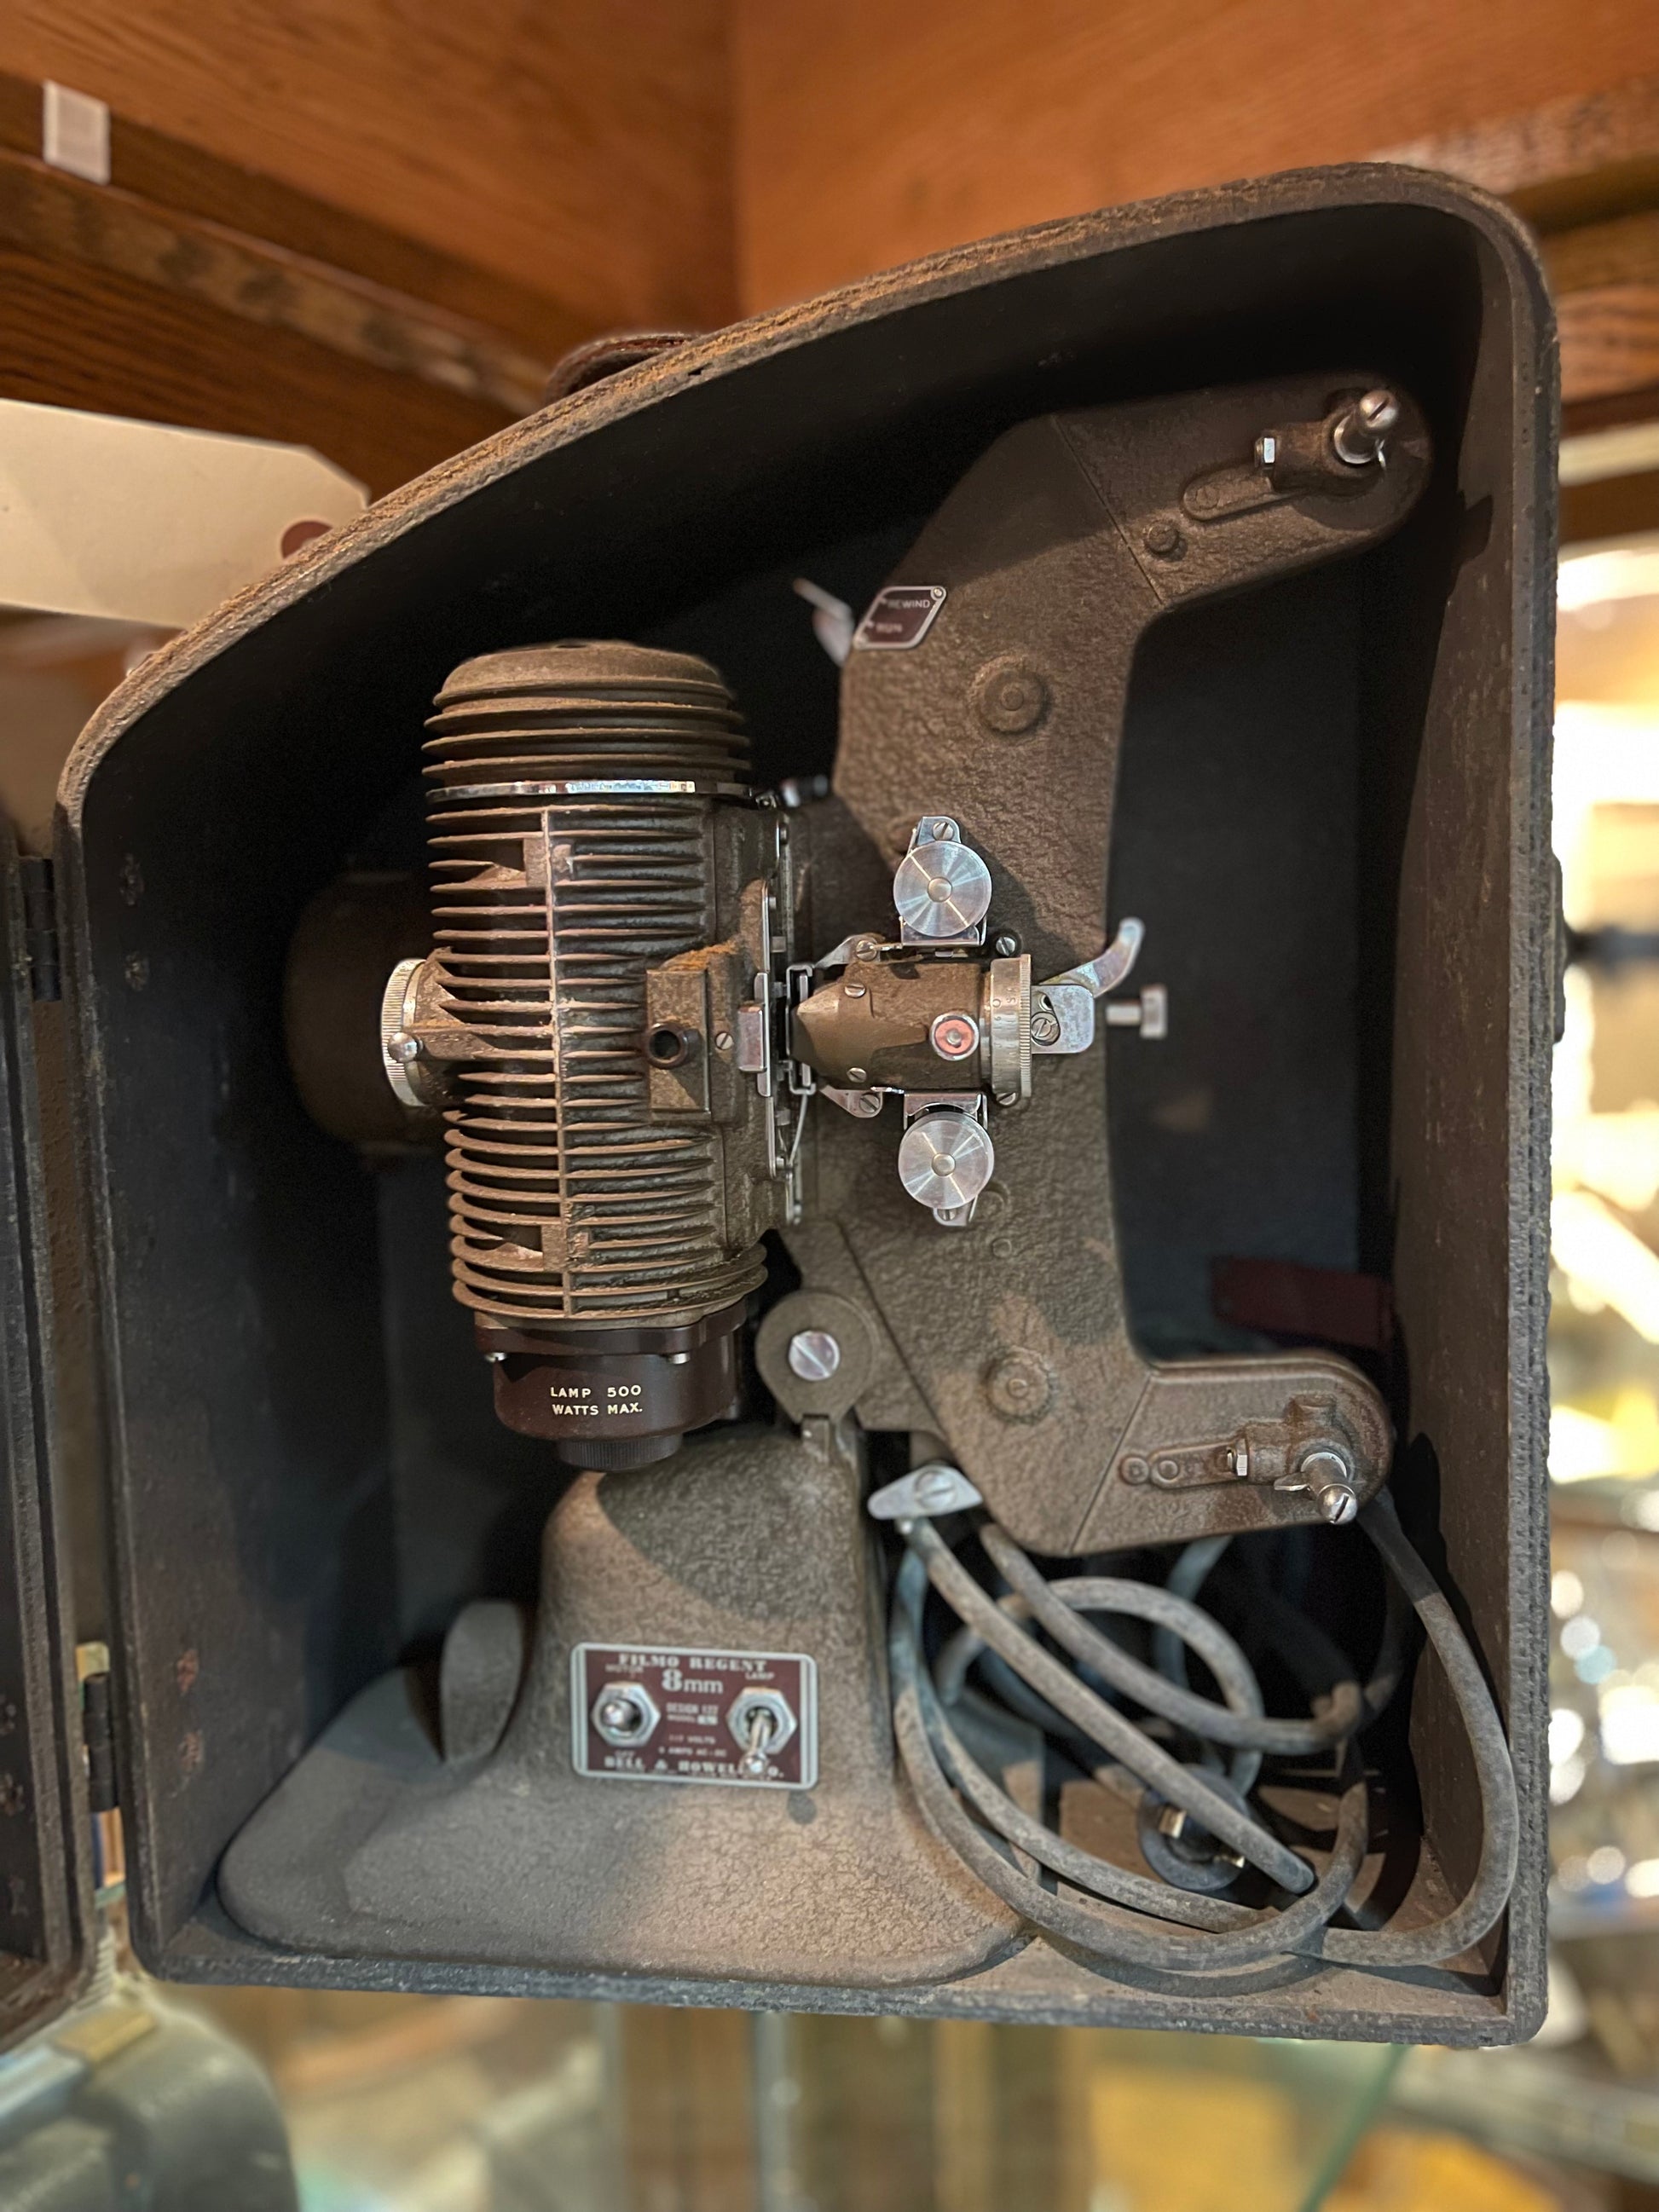 8mm Film Projector – Reuse Depot, Inc.